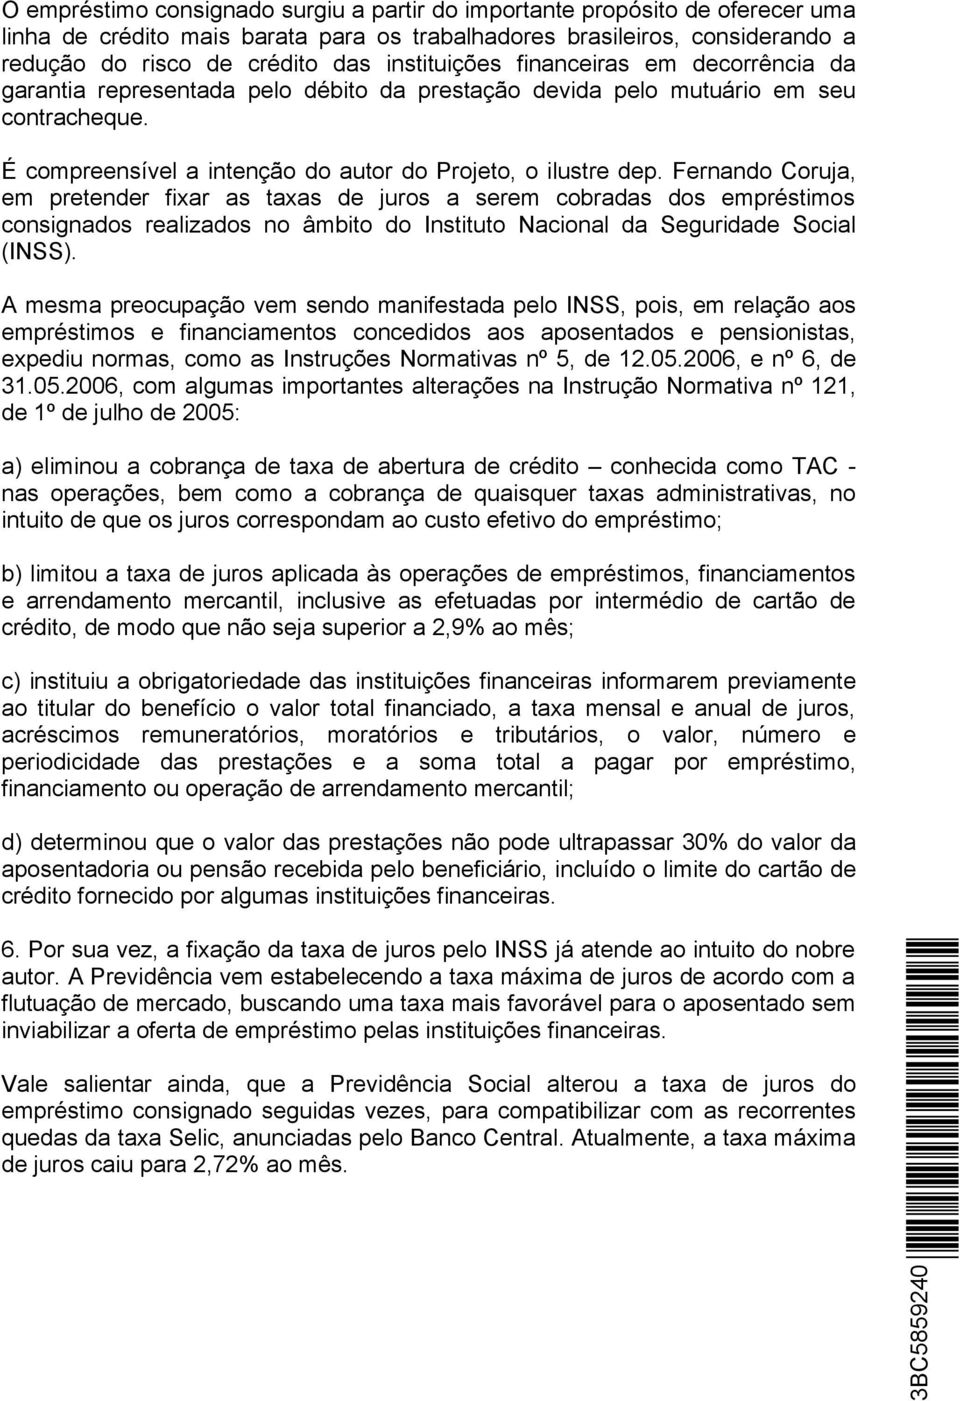 Fernando Coruja, em pretender fixar as taxas de juros a serem cobradas dos empréstimos consignados realizados no âmbito do Instituto Nacional da Seguridade Social (INSS).